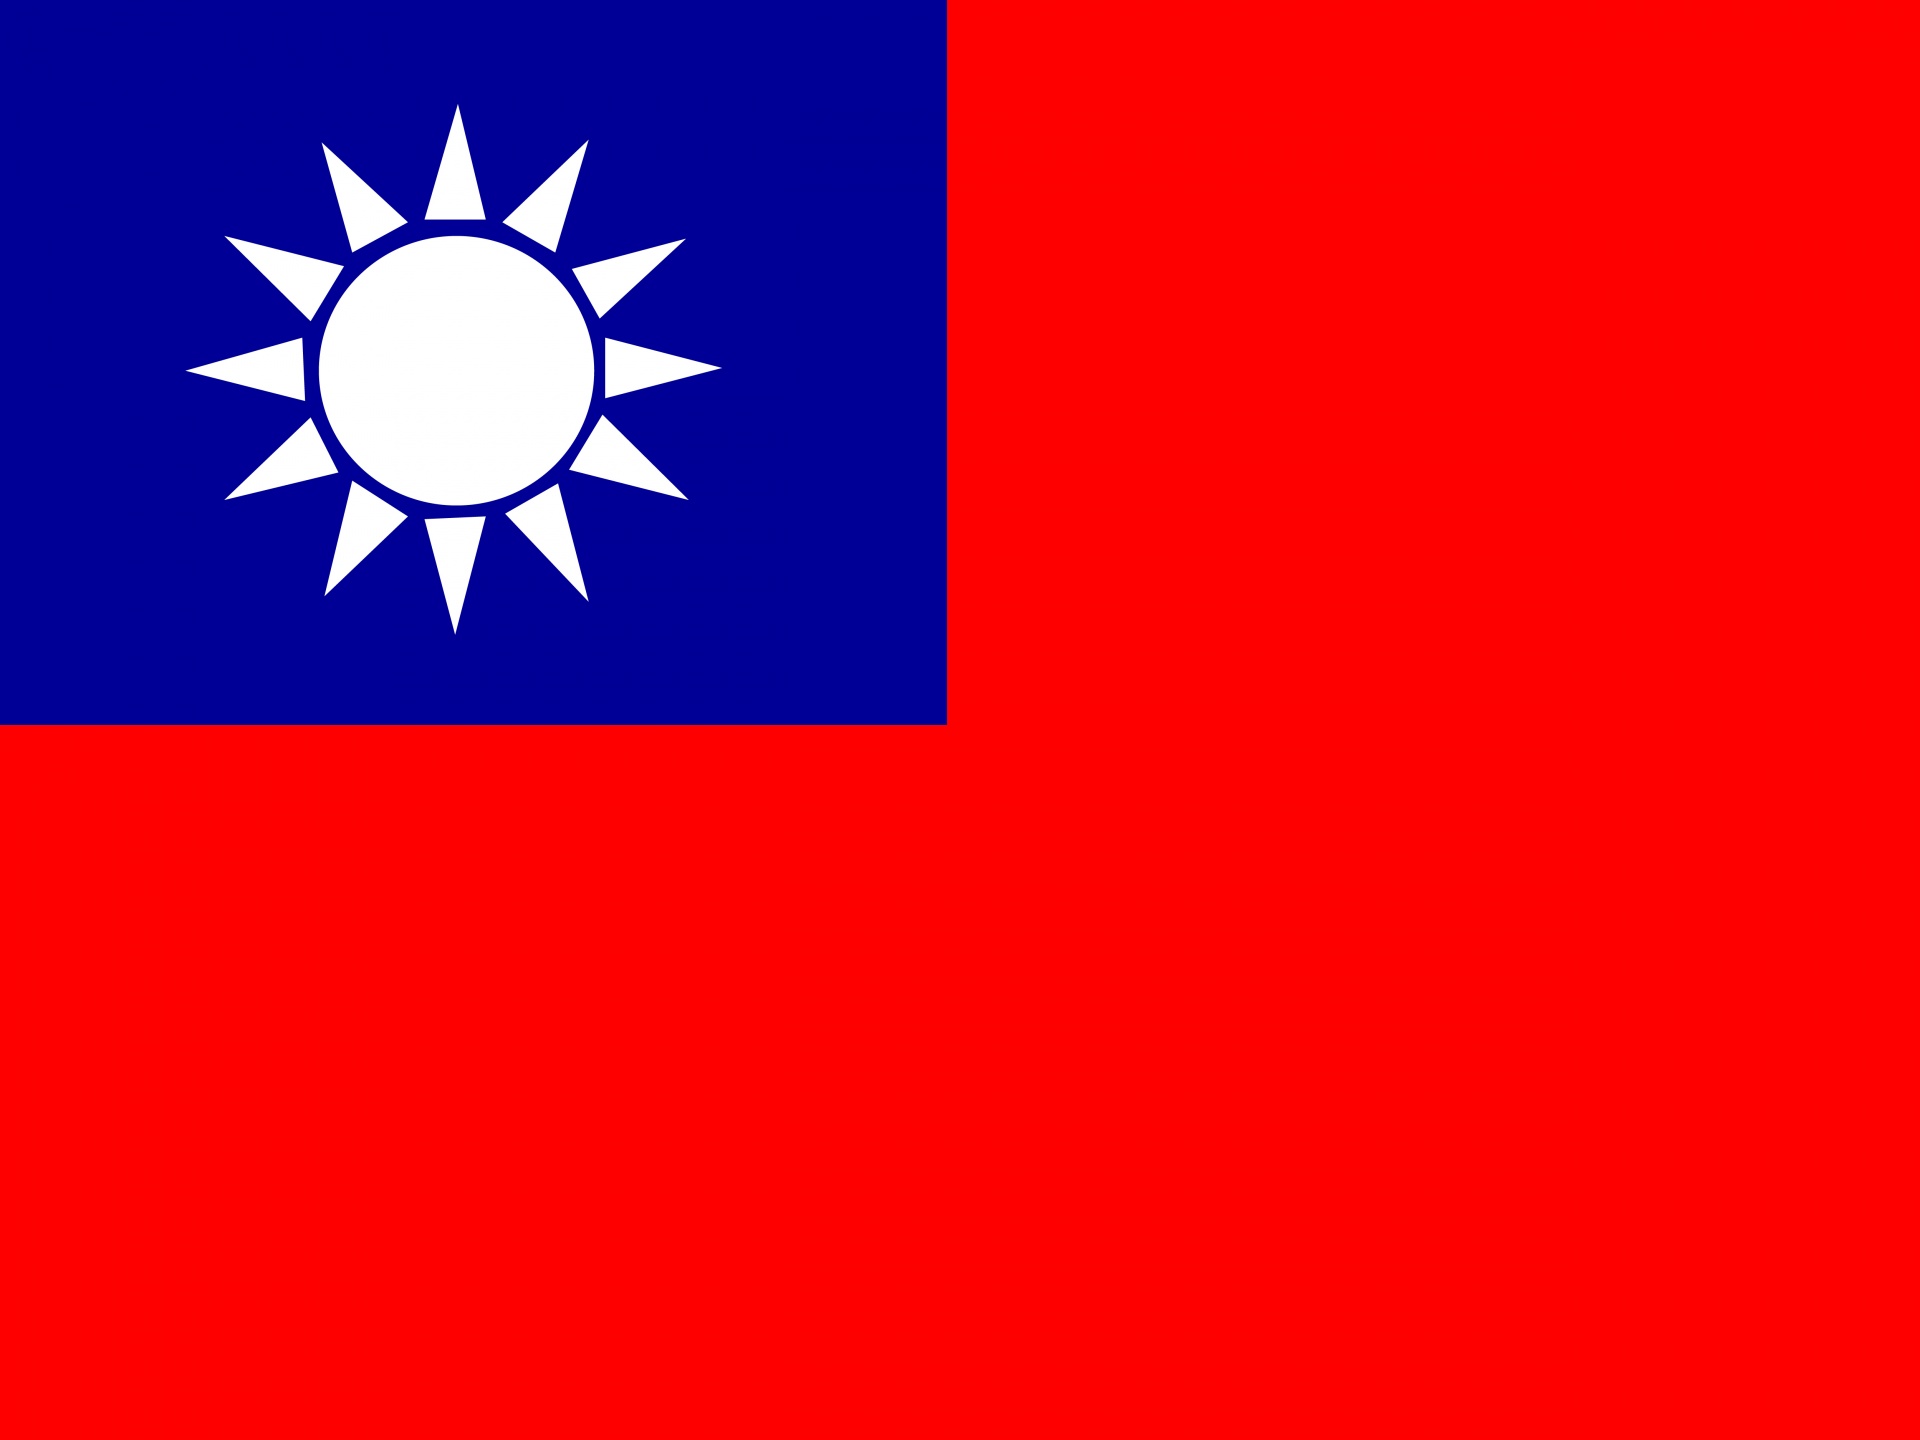 Bandera de Taiwán. Rectángulo. 3 cuartos están coloreados de rojo y el otro cuarto es un rectángulo pequeño ubicado en la esquina de arriba a la izquierda, de color azul y con un sol blanco adentro.